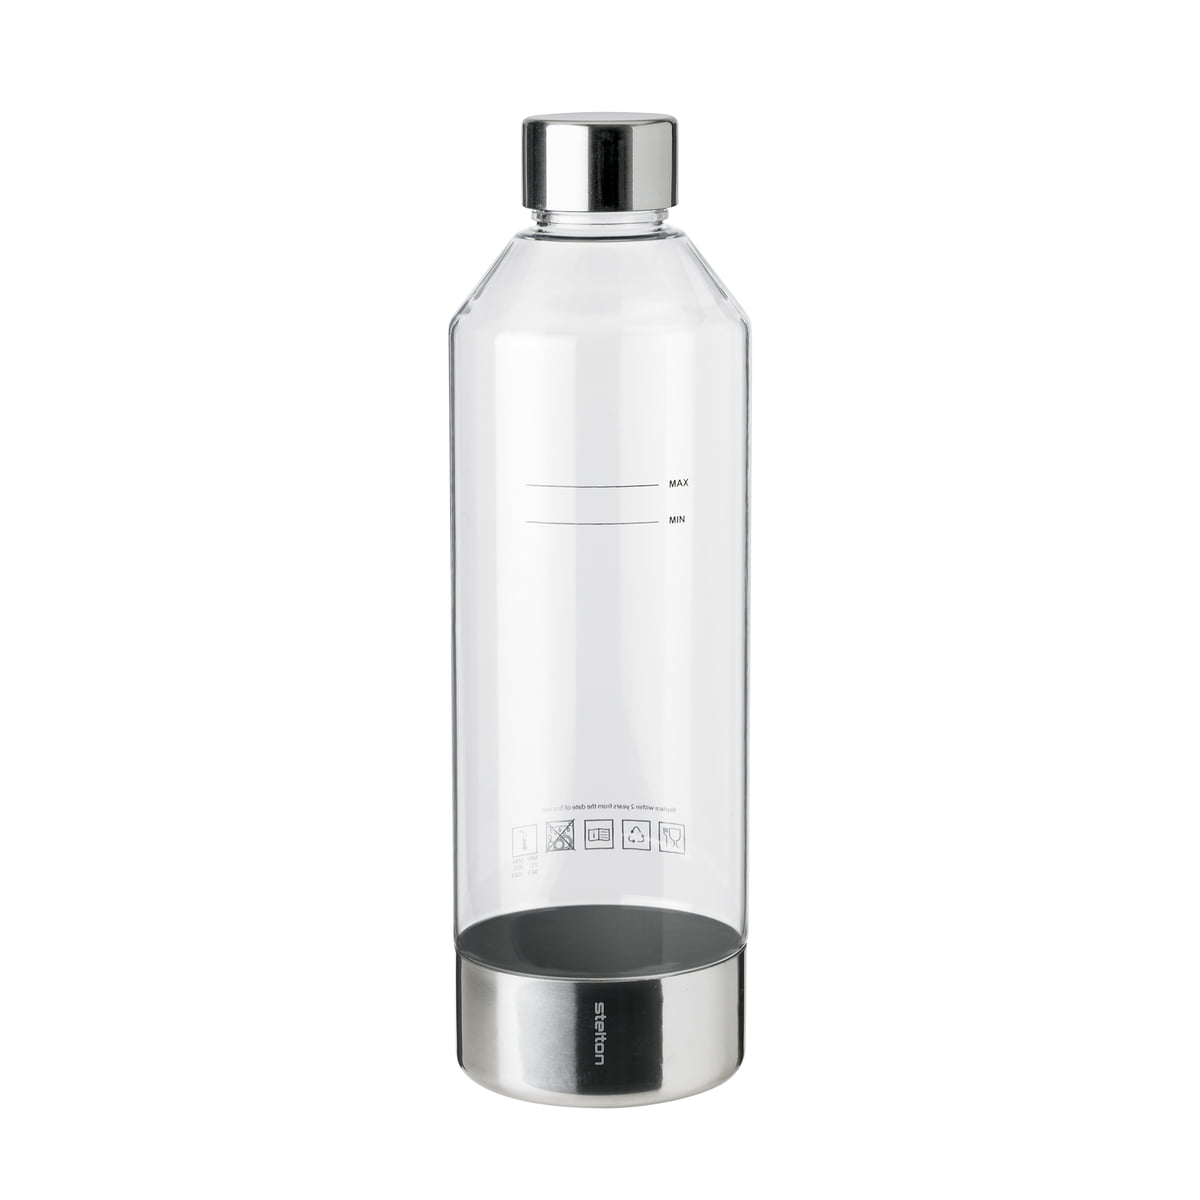 Water Bottle 500ml Sand Beige, 500ml